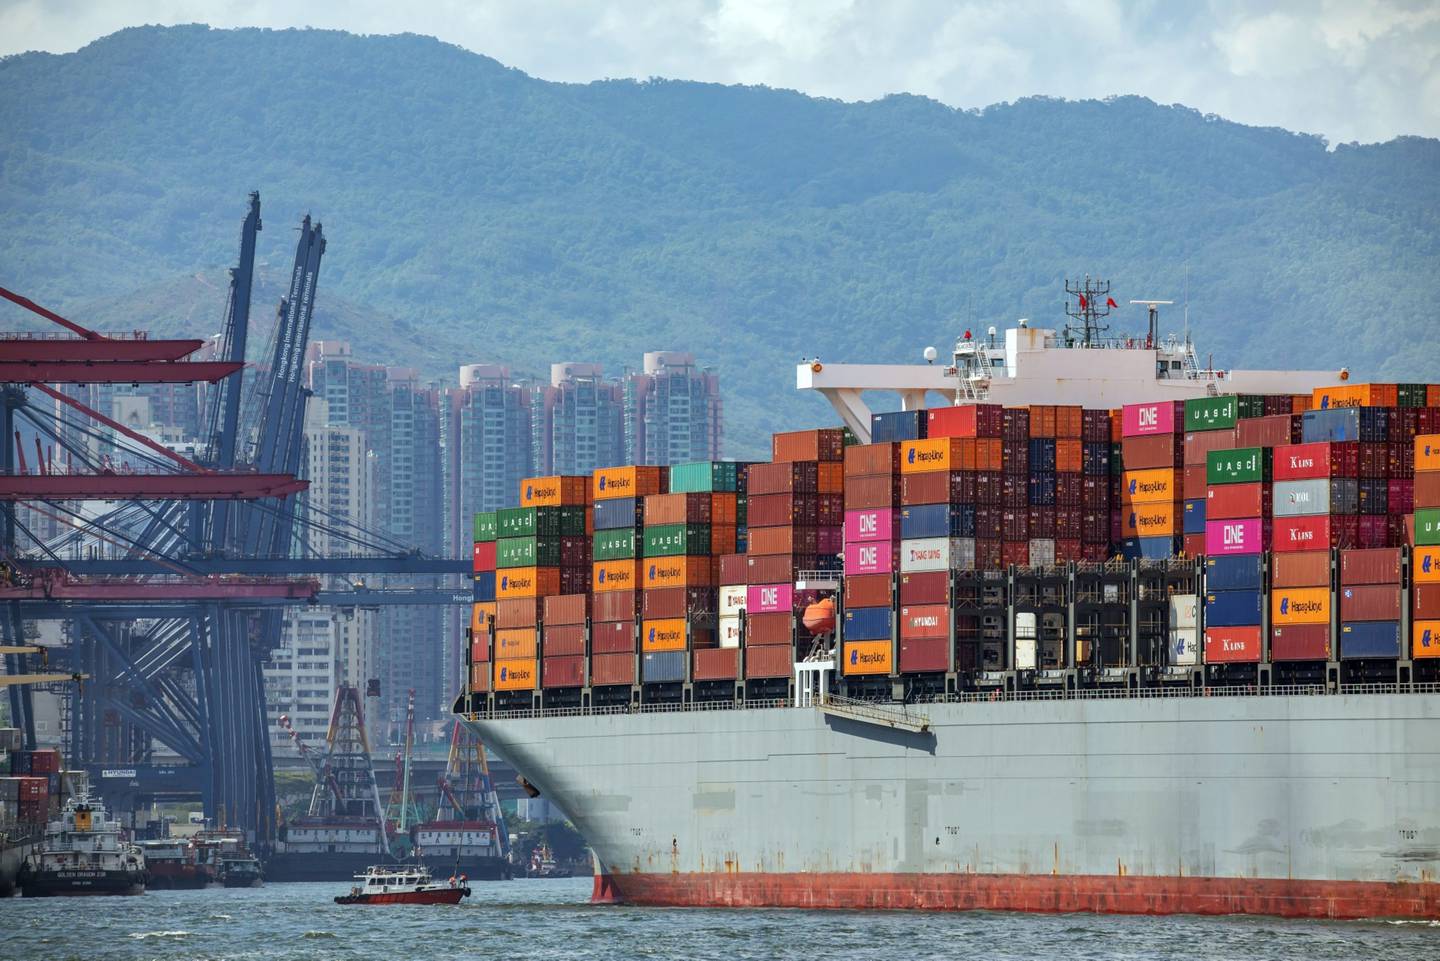 Un buque portacontenedores navega hacia las terminales de contenedores de Kwai Tsing en Hong Kong, China, el miércoles 19 de mayo de 2021.